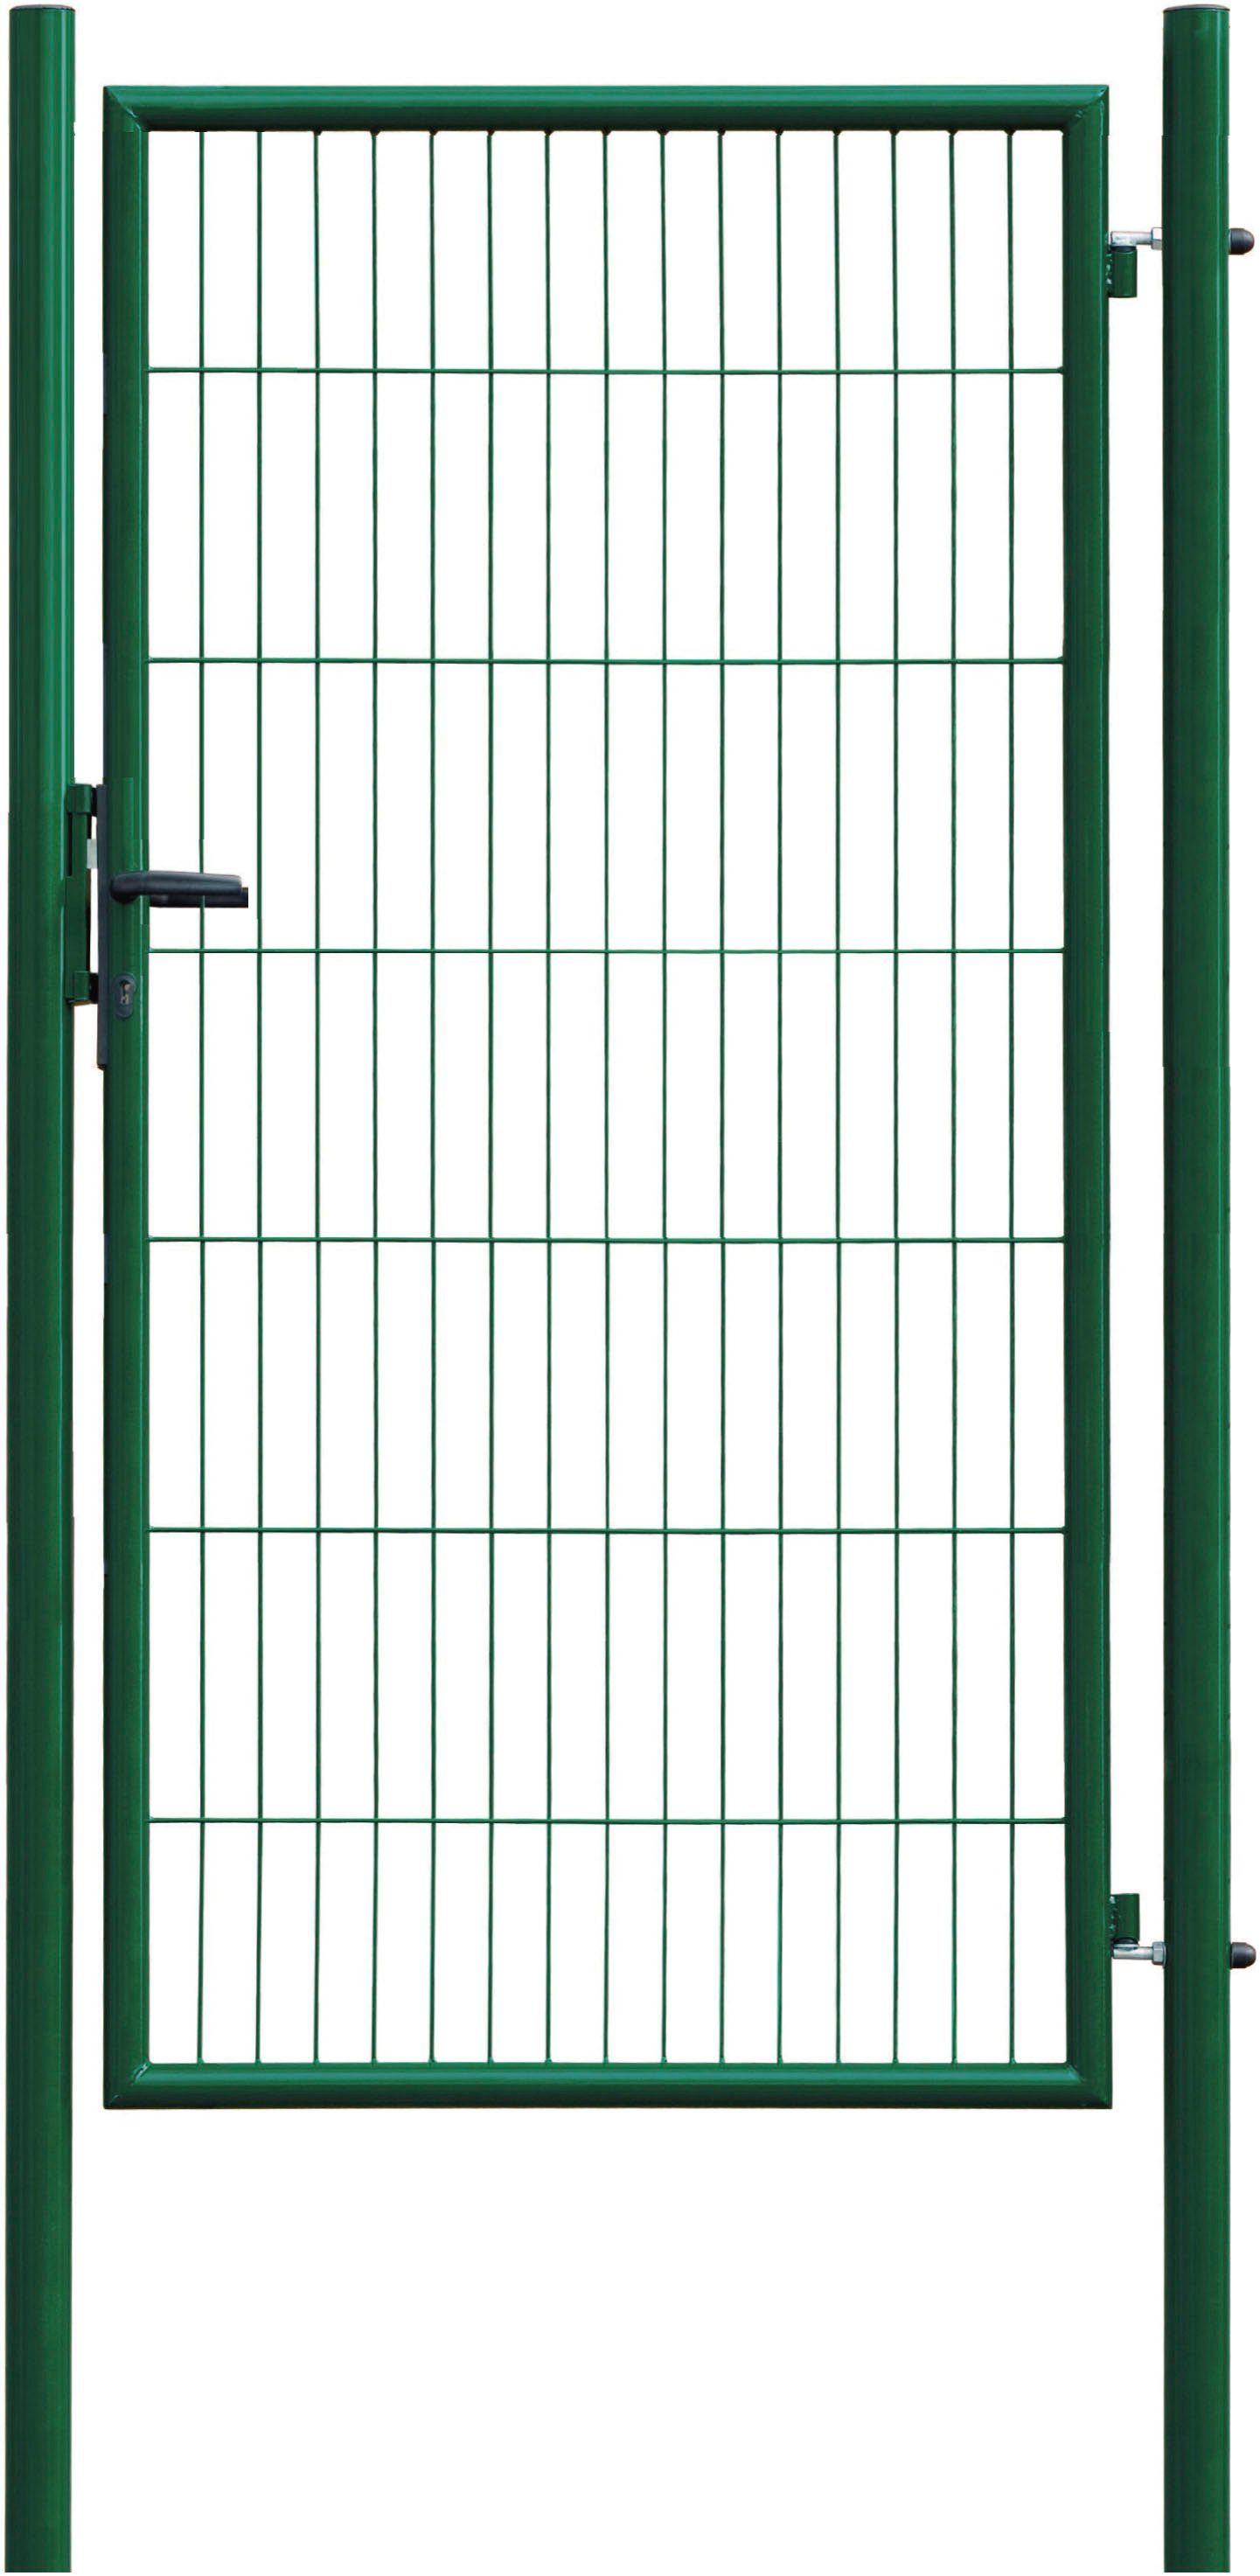 GARDEN 'N' MORE Zauneinzeltür Einzeltor Standard, (Set), 175 cm hoch, grün